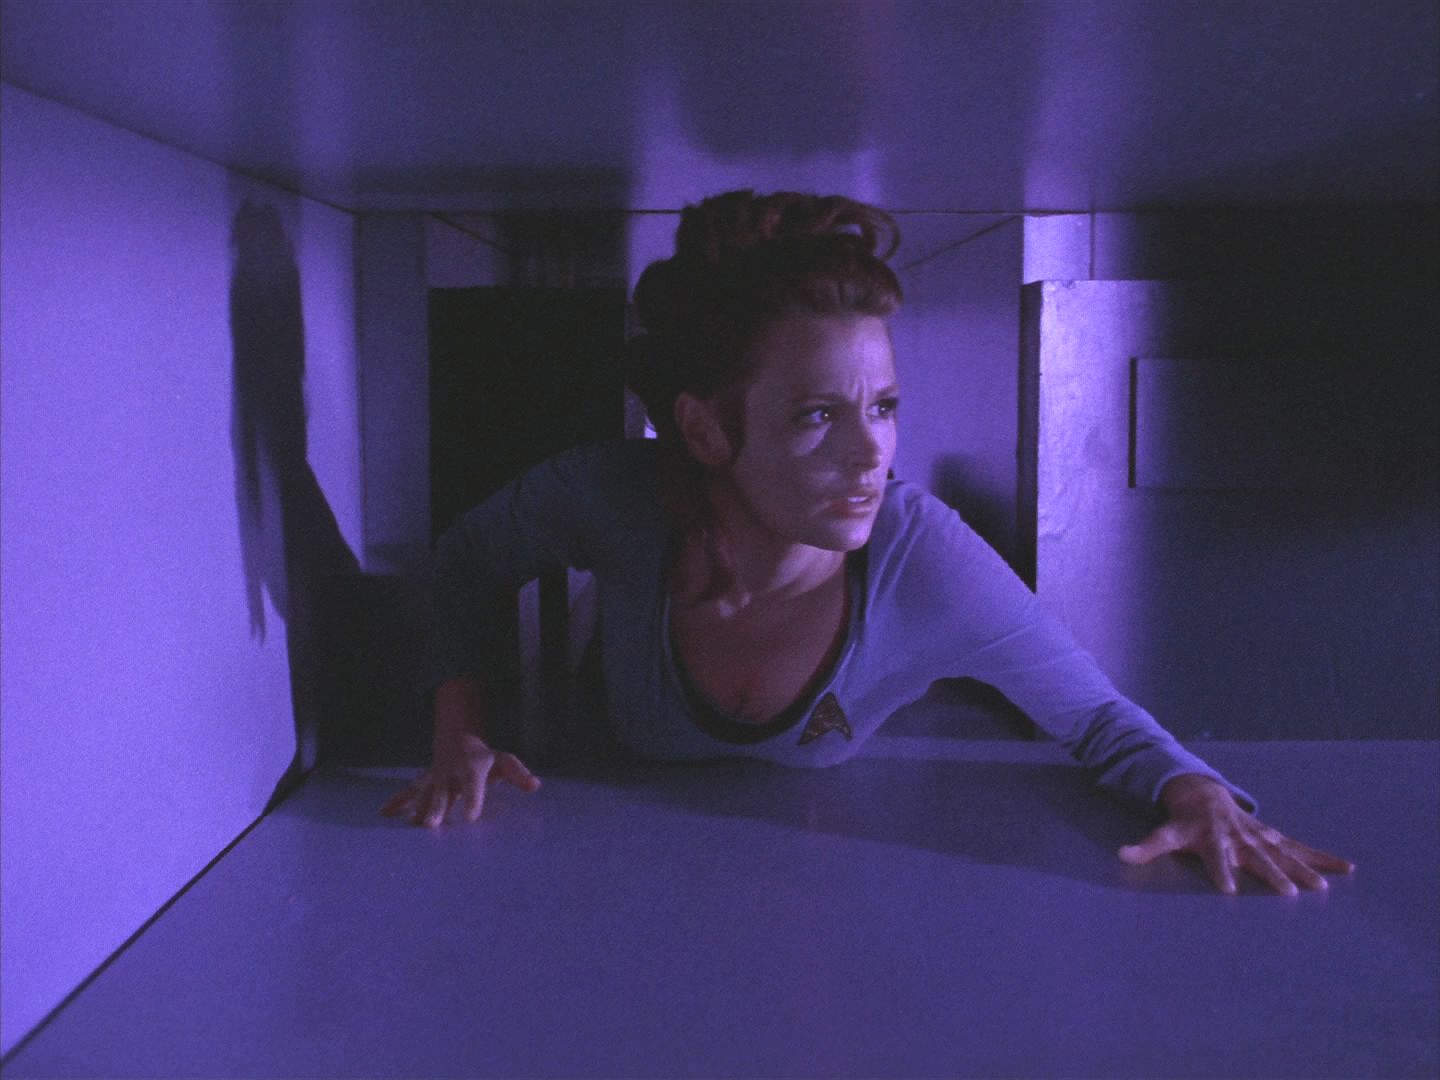 Helen prolézá klimatizací a hledá hlavní zdroj energie. Podaří se jí vypnout generátor a Kirk se v tom okamžiku dokáže spojit se Spockem. Ten se okamžitě transportuje na povrch i s výsadkem.